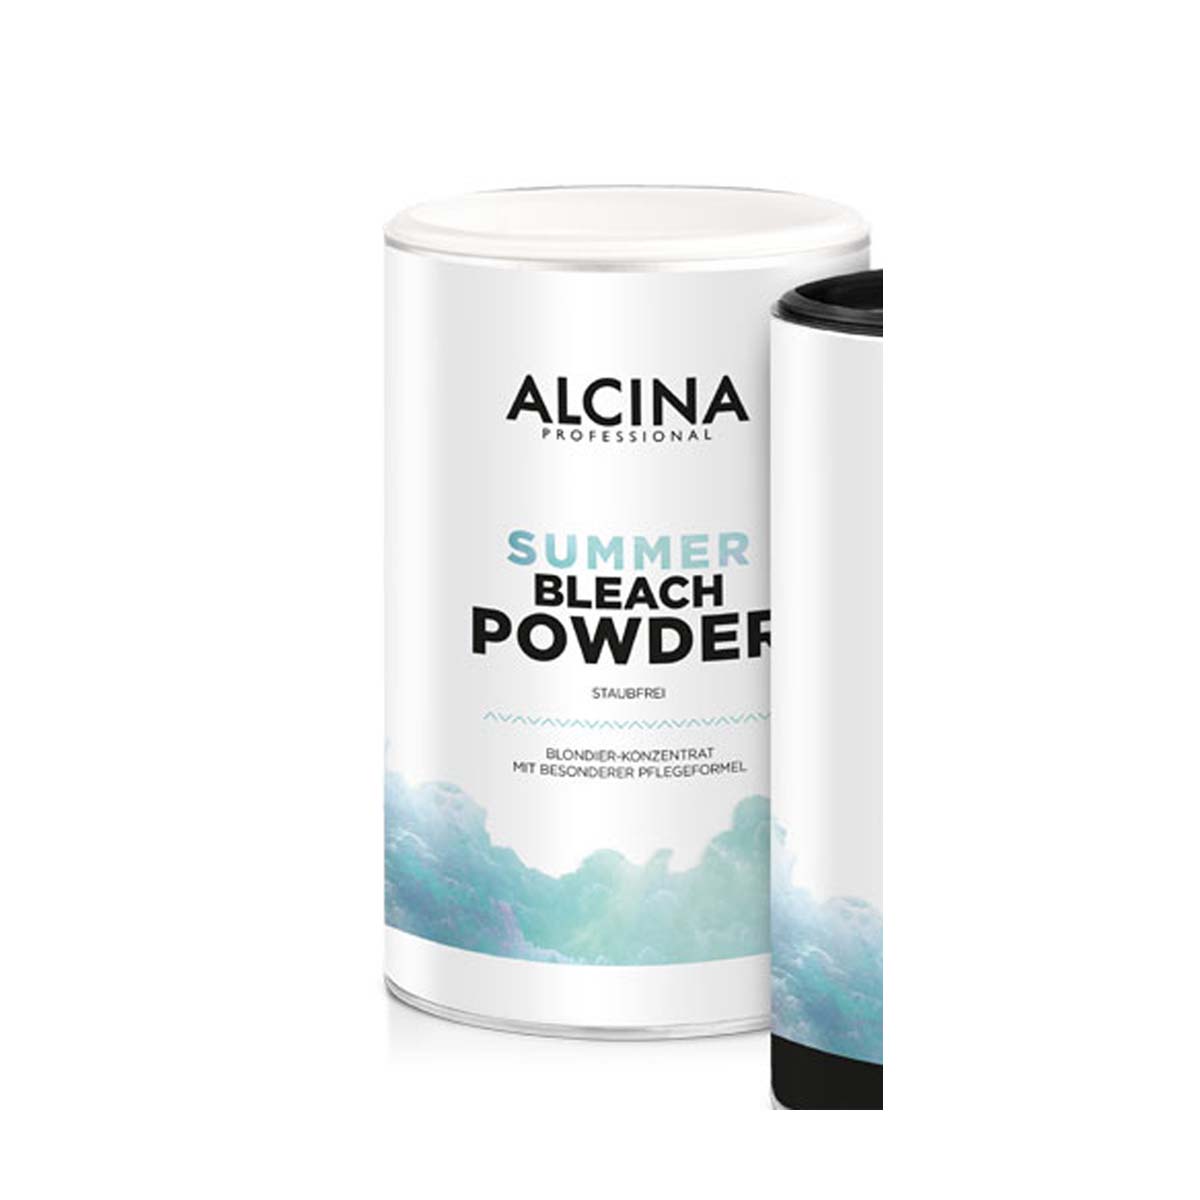 Alcina Summer Bleach Powder - Blondierung 500 g